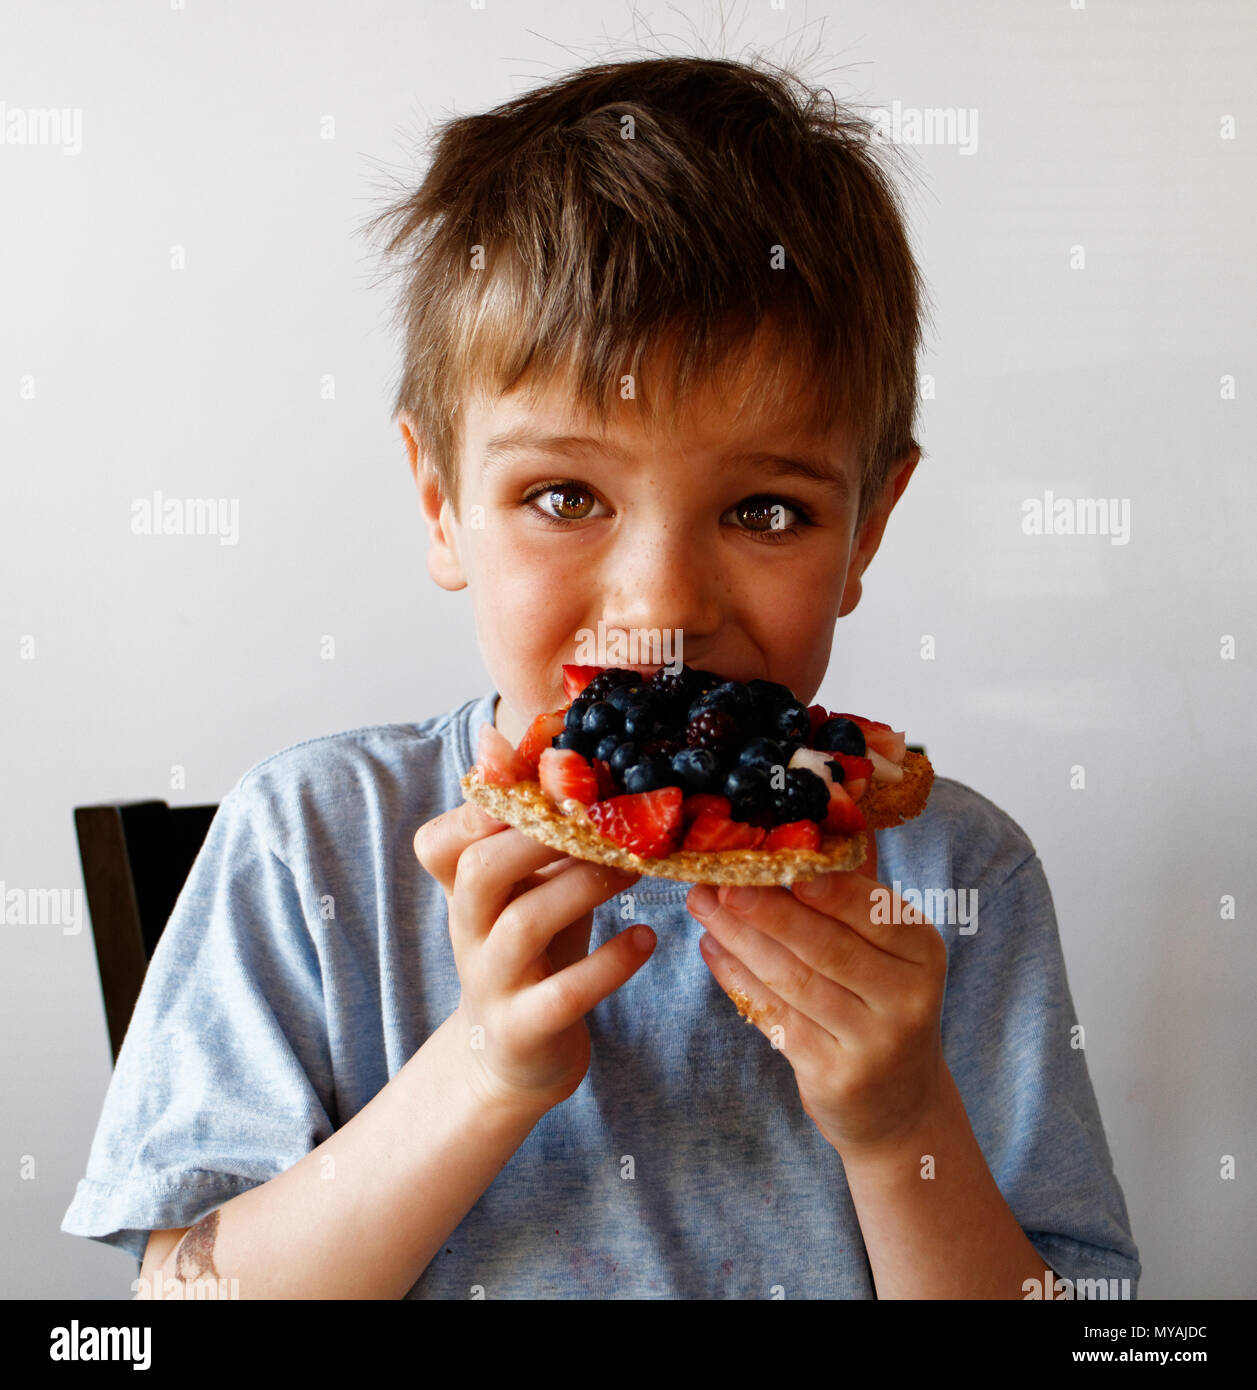 Un portrait d'un jeune garçon (6 ans) de manger un petit déjeuner sain de fruits et pain grillé Banque D'Images